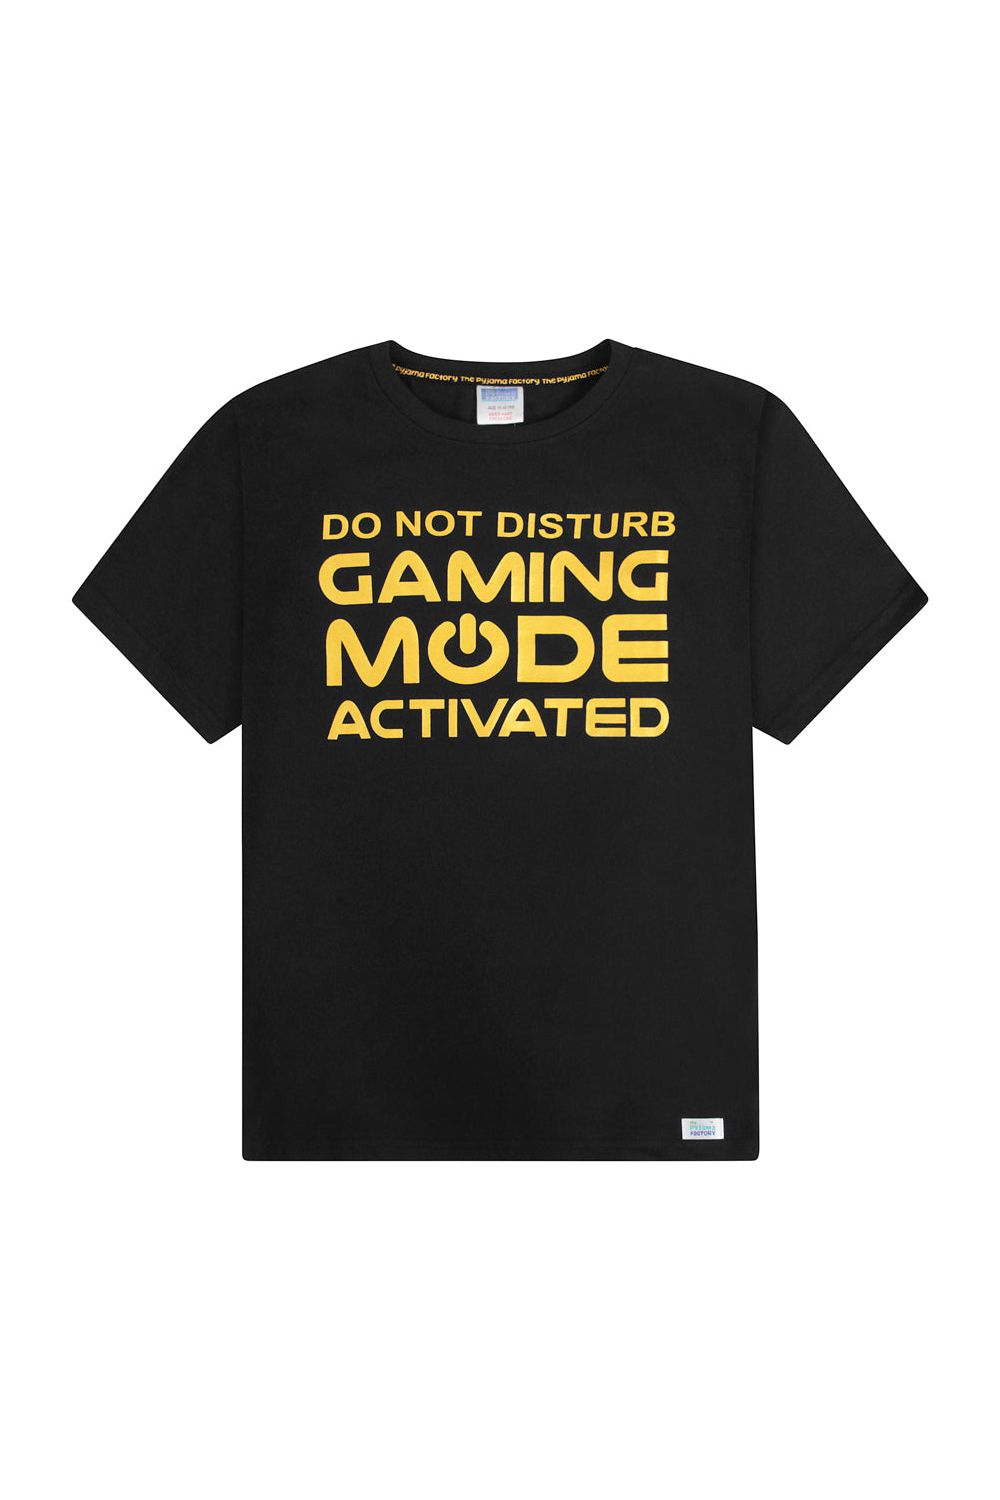 Gaming Mode Gold Activated  Short Pyjamas - Pyjamas.com